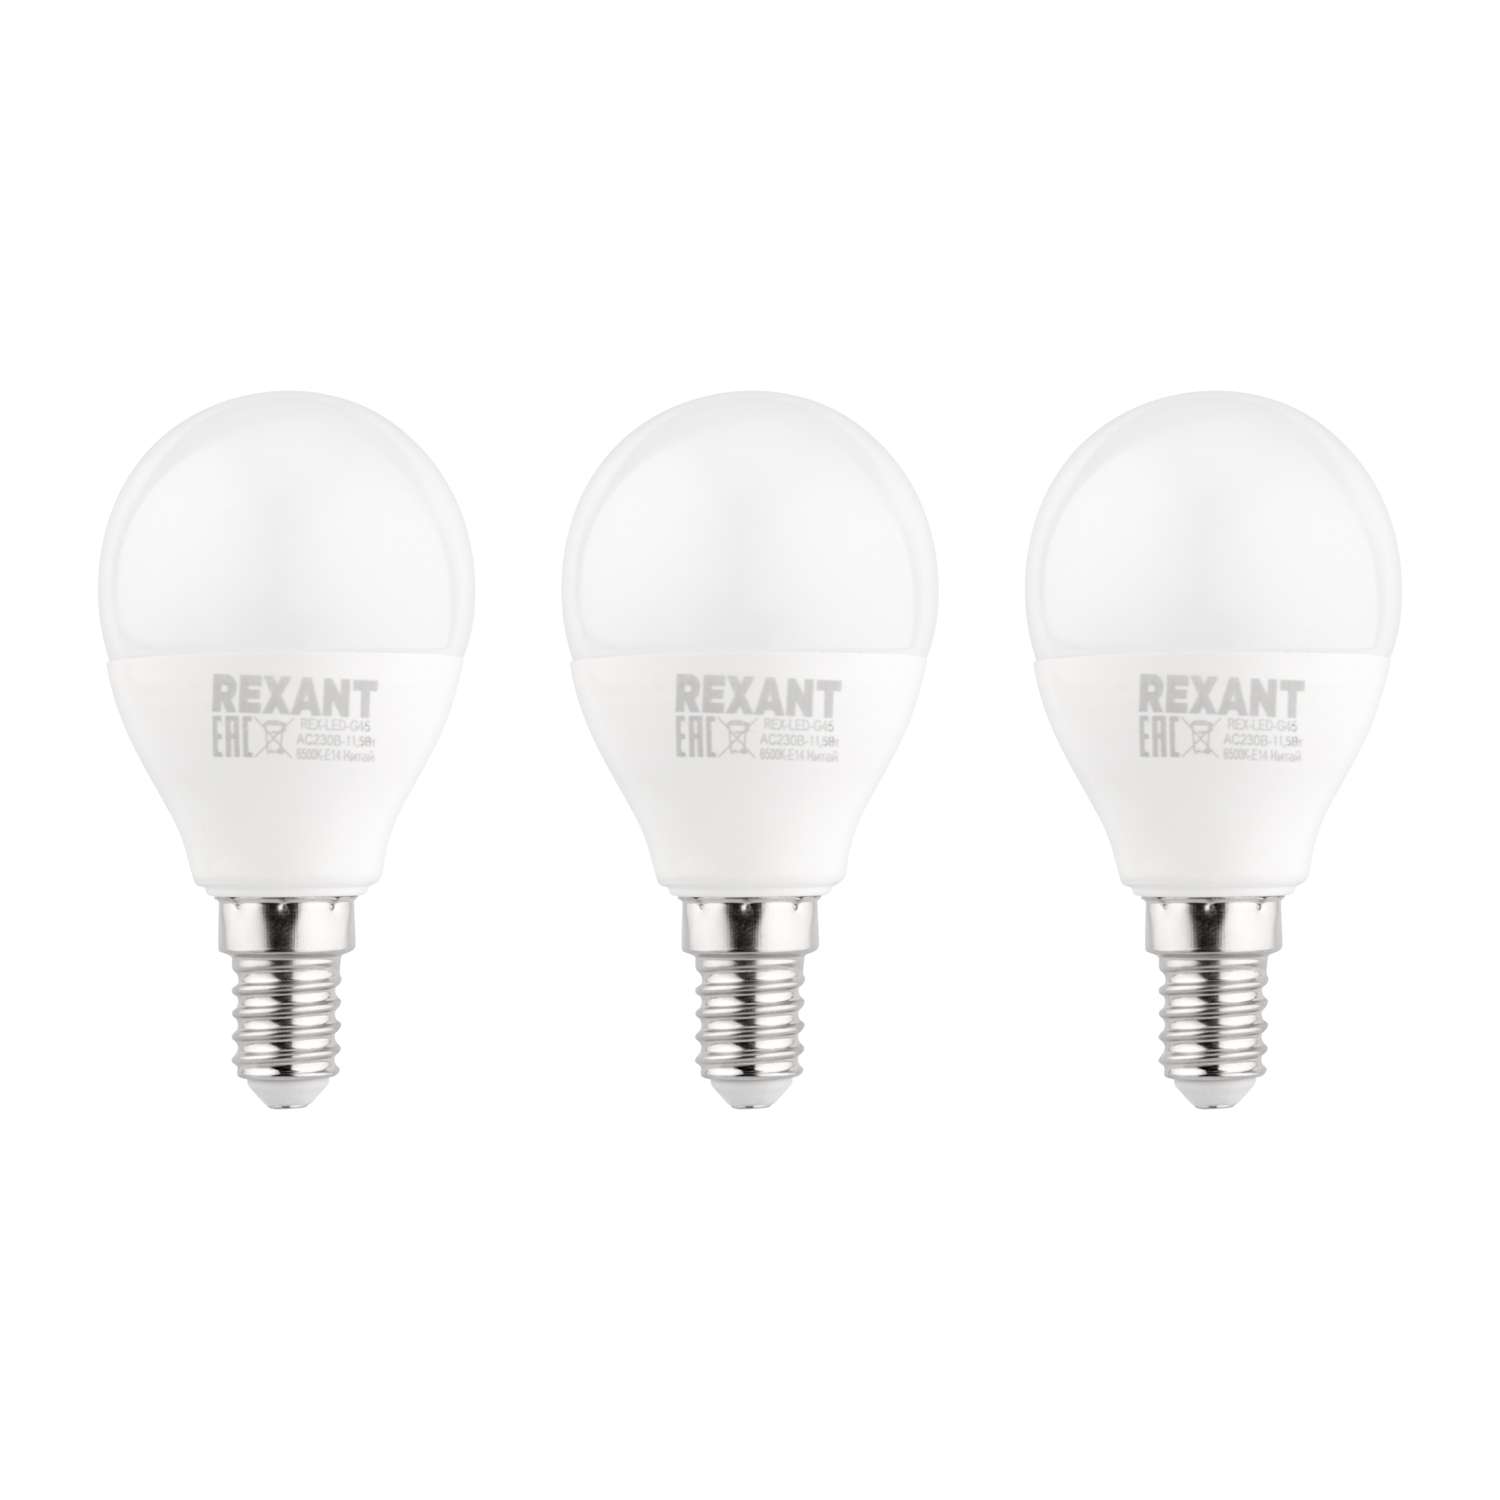 Лампа REXANT светодиодная Шарик GL 11.5Вт E14 1093Лм 6500K холодный свет 3 штуки - фото 1